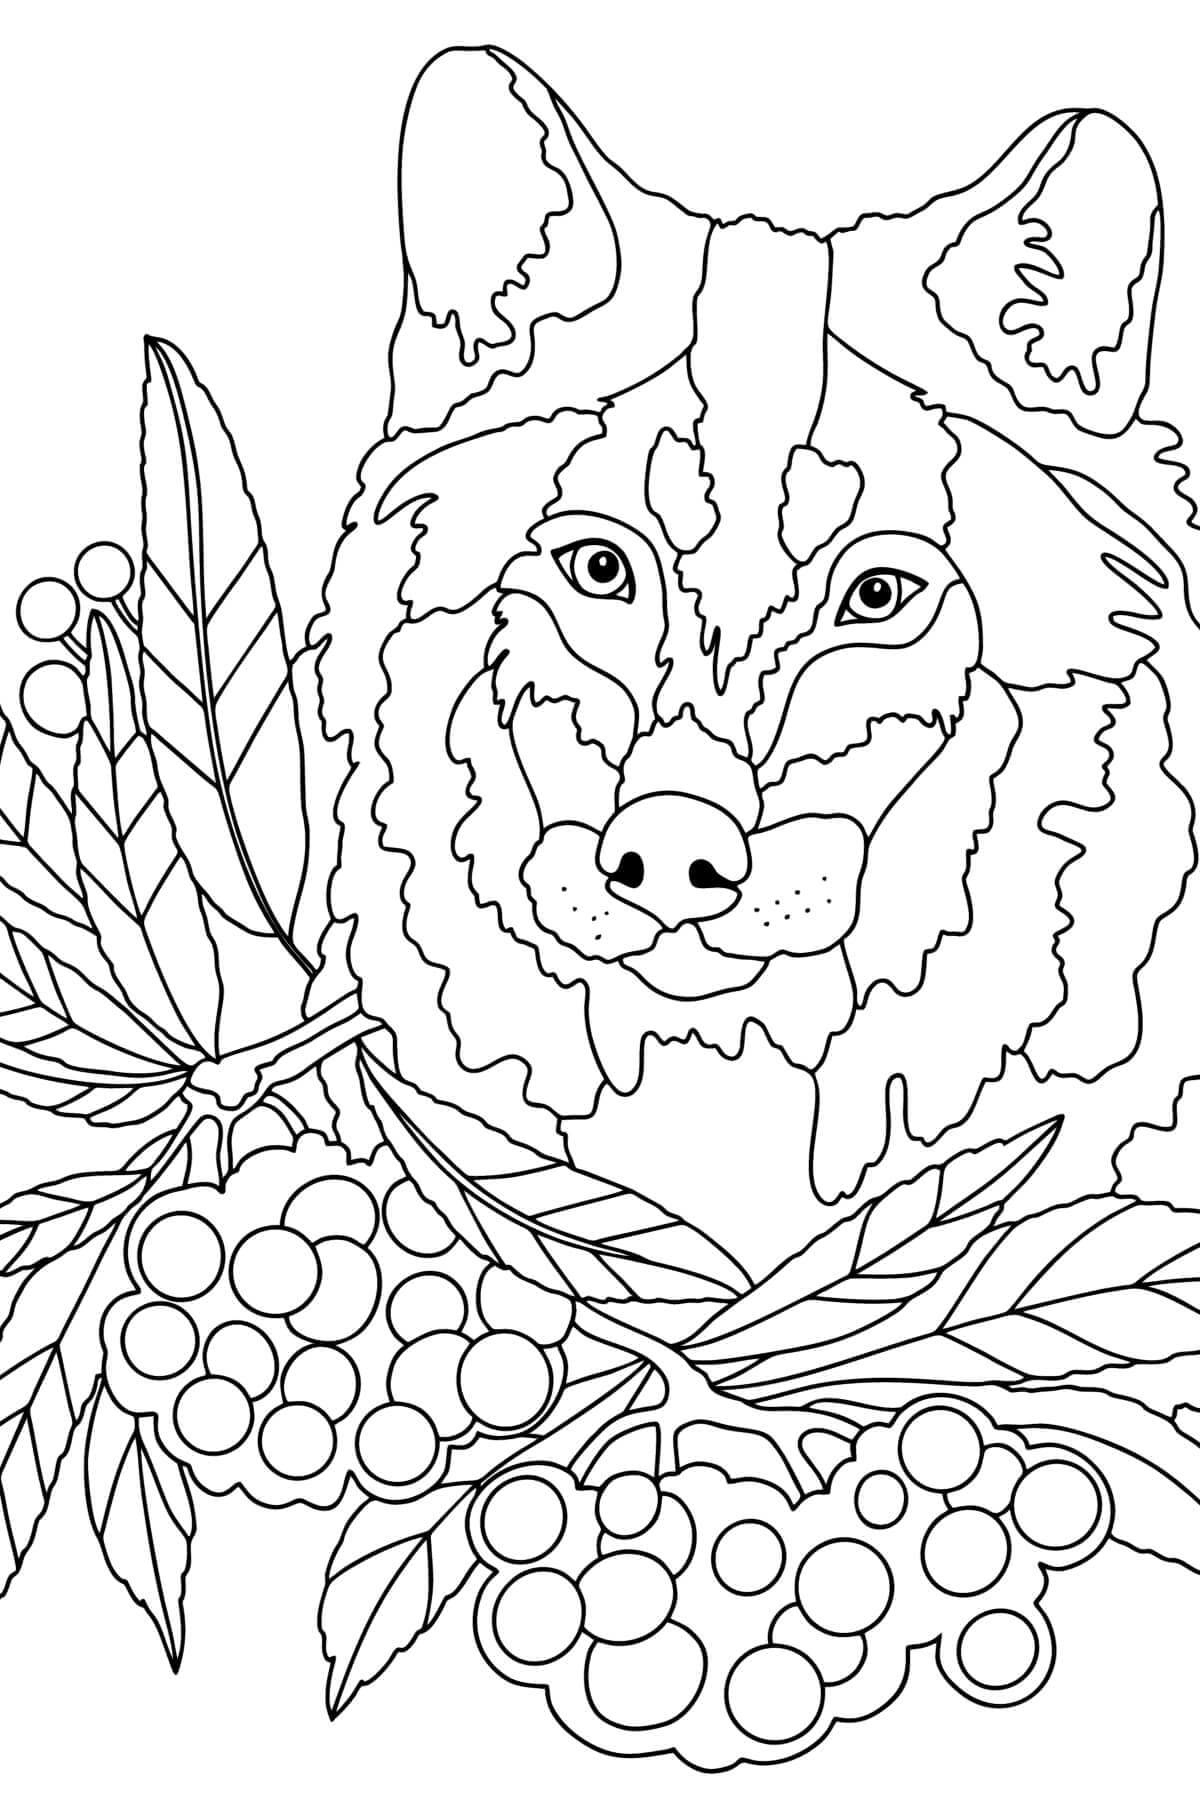 Dessin du Mandala de Loup coloring page